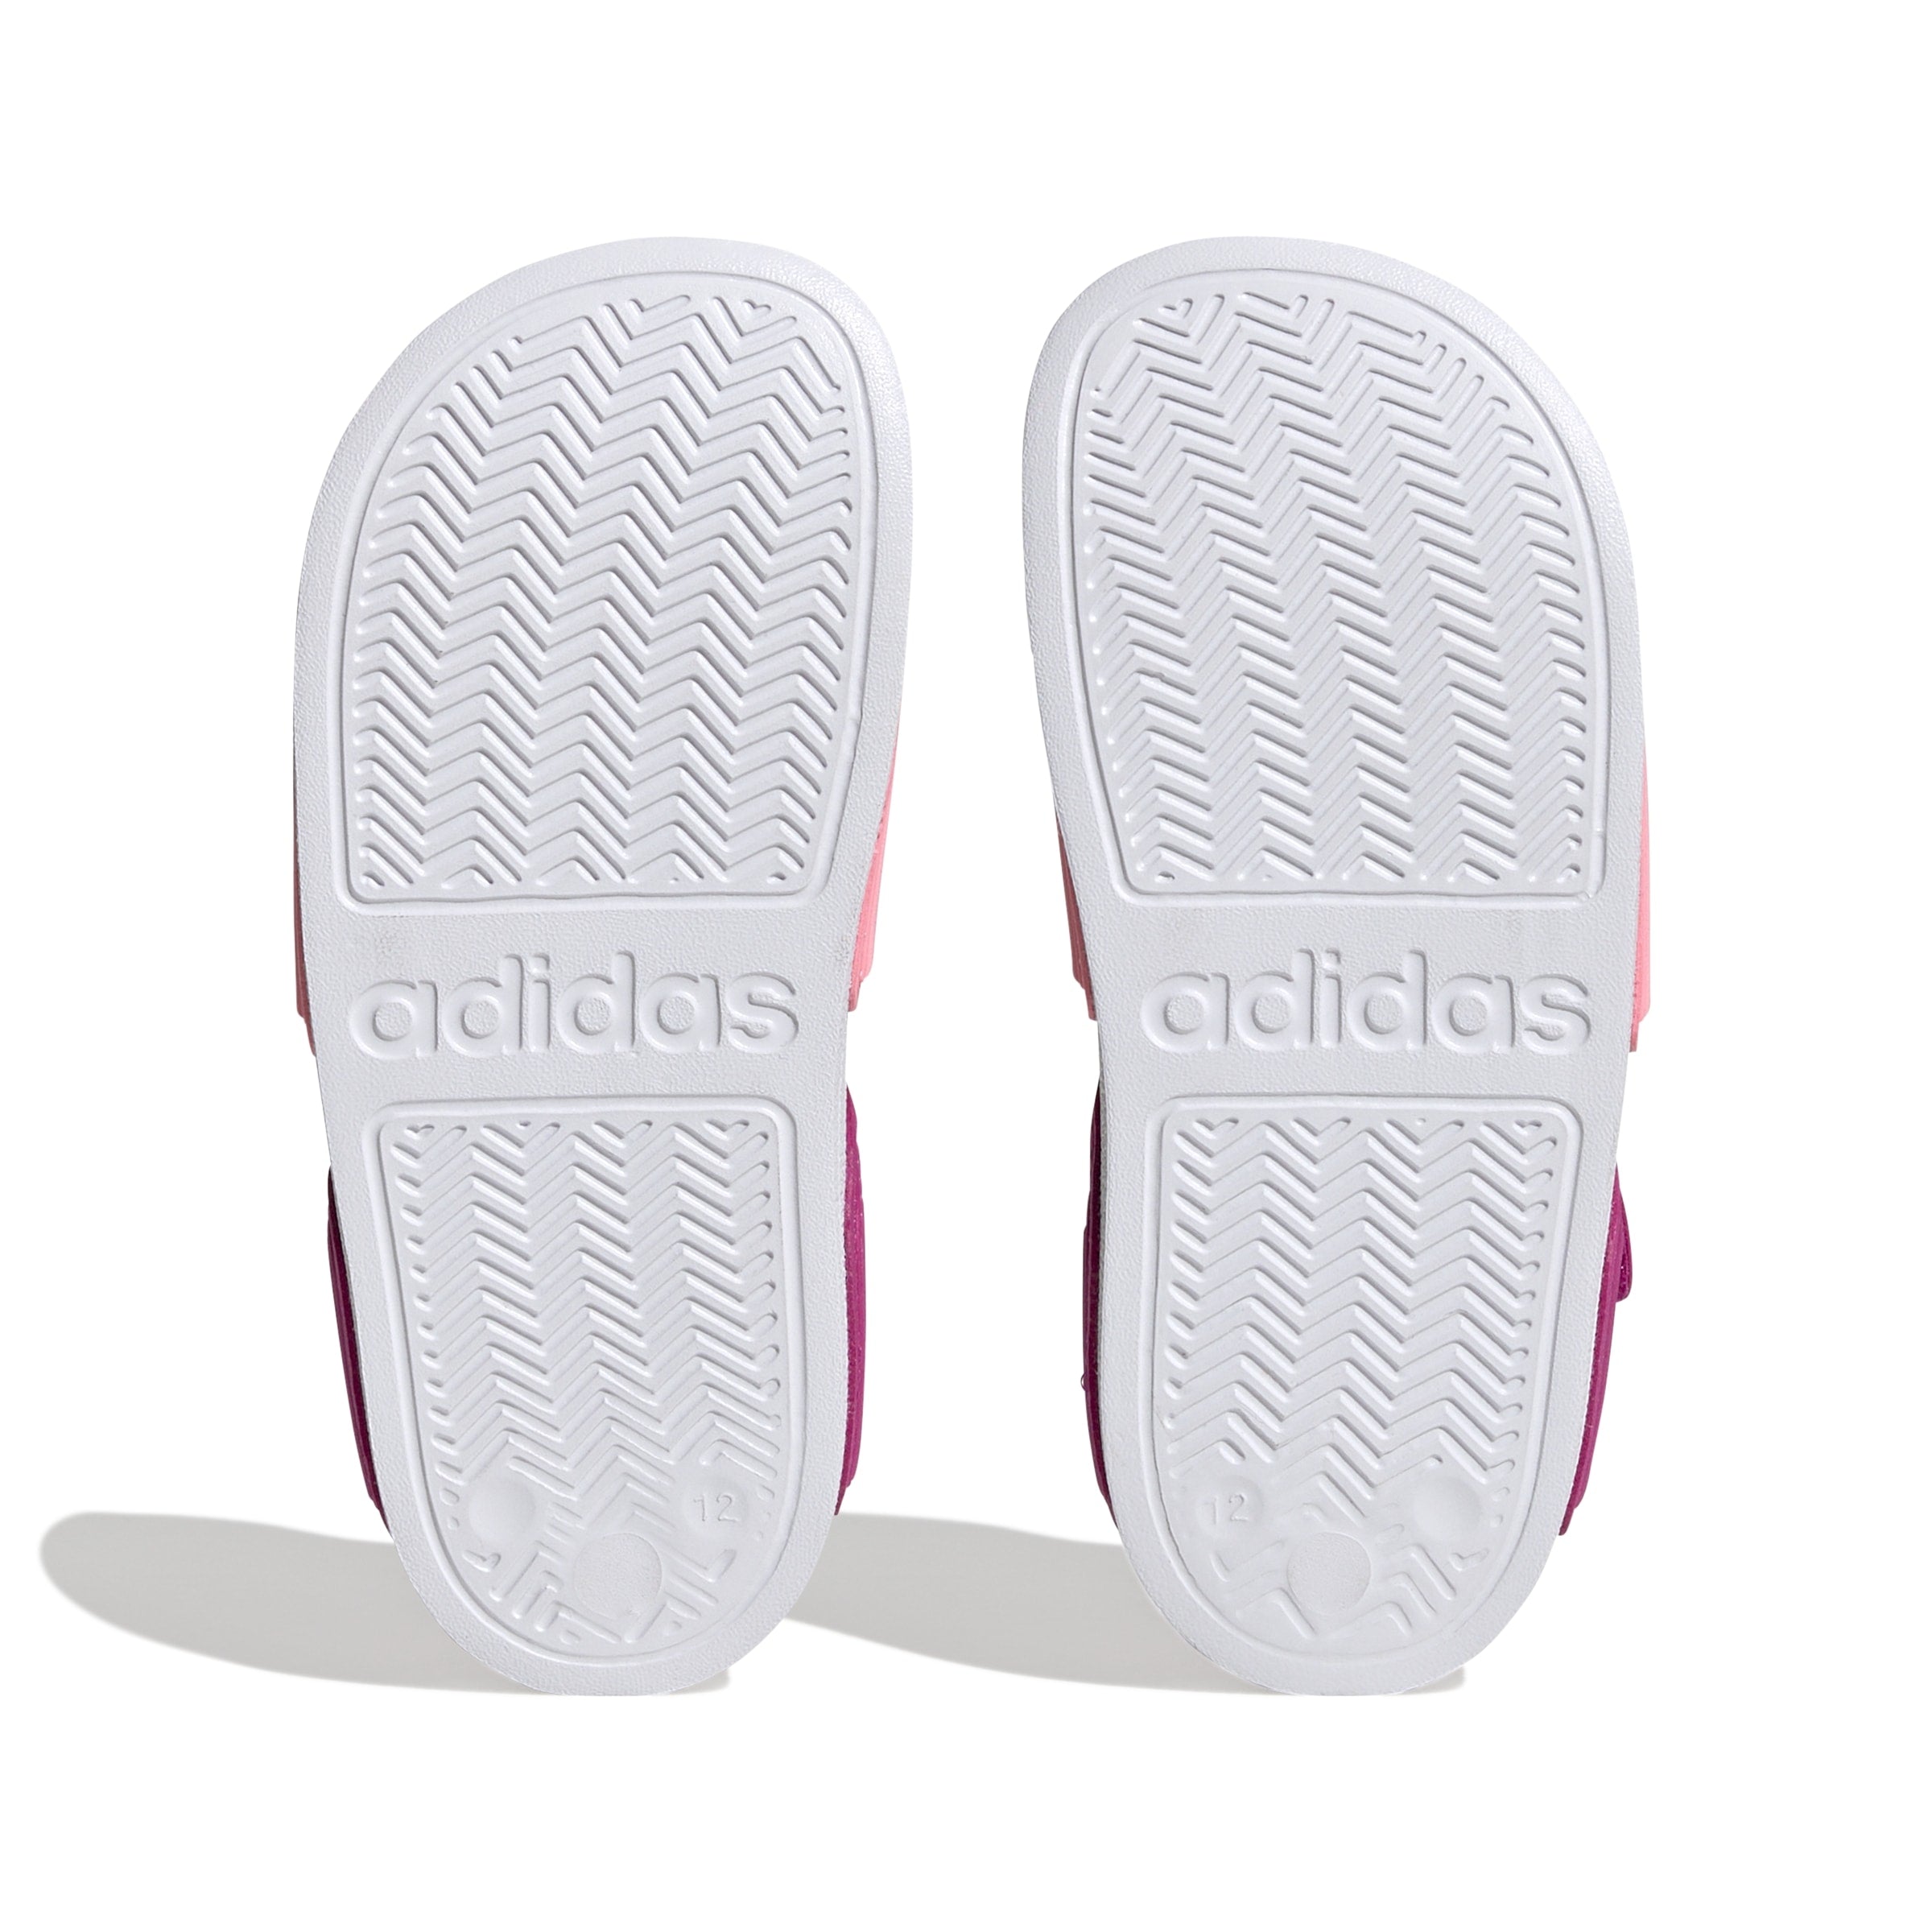 Adidas Adilette Sandal K